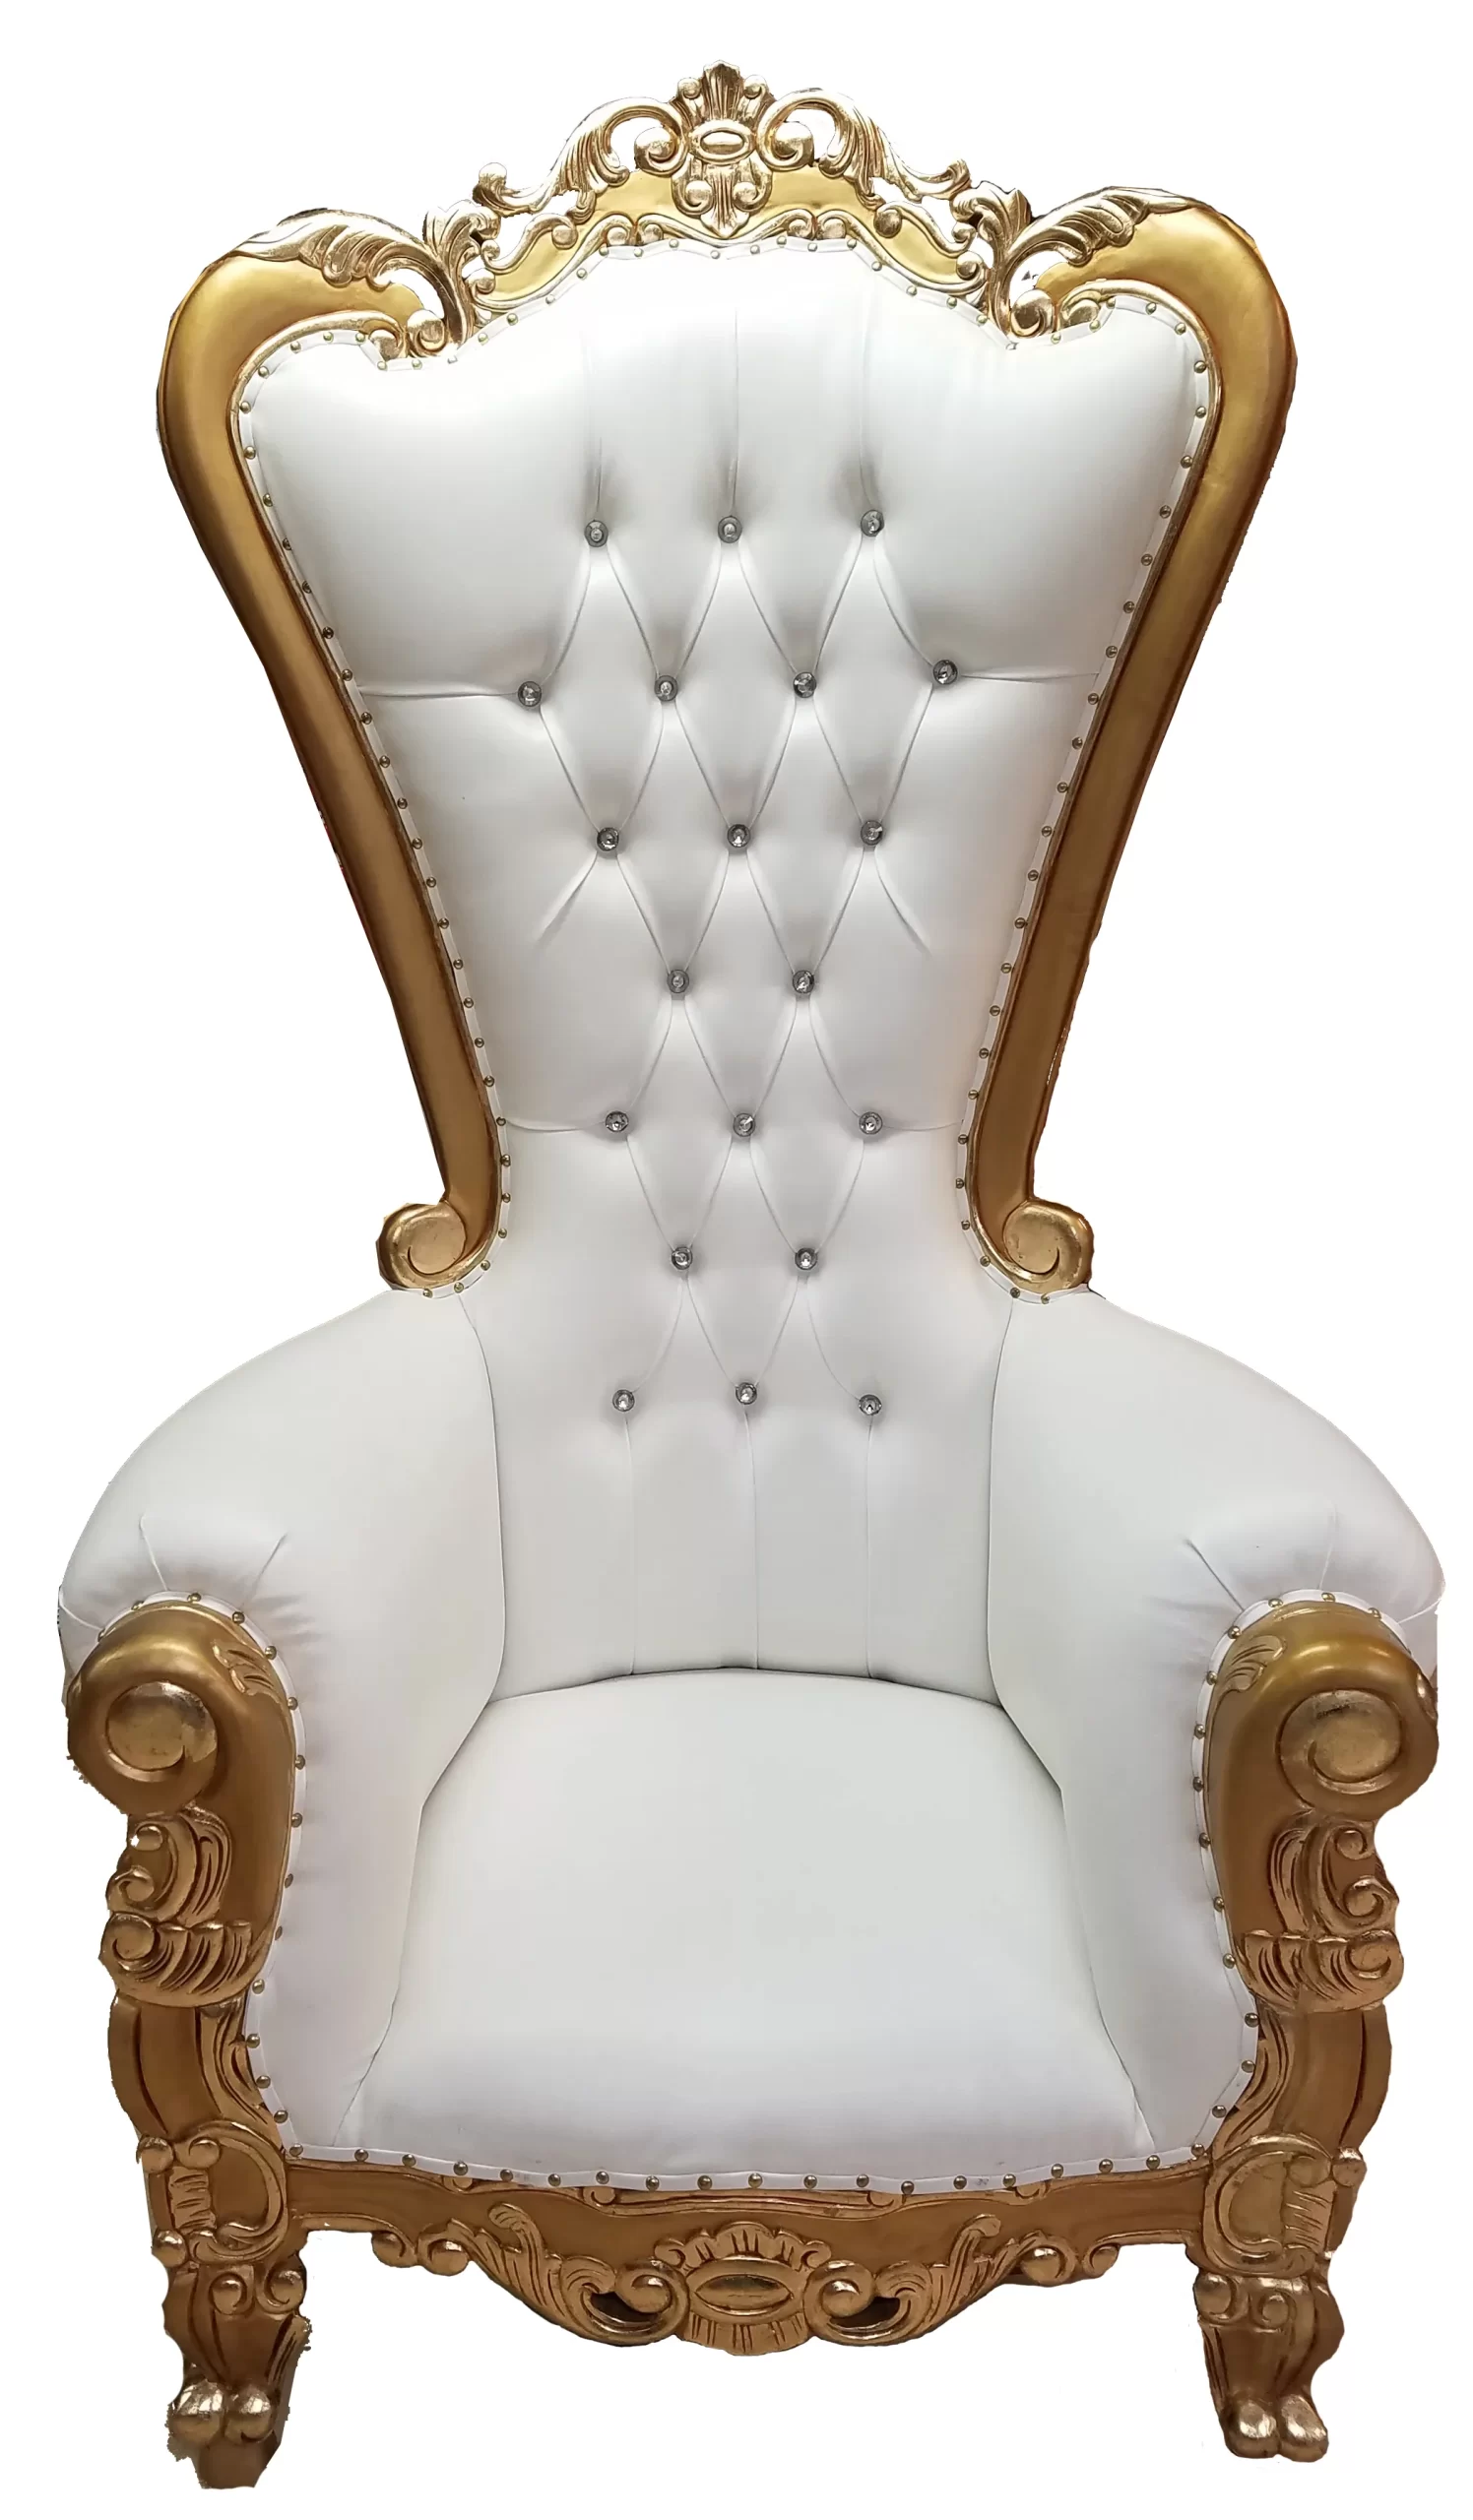 Single Throne Chair $150